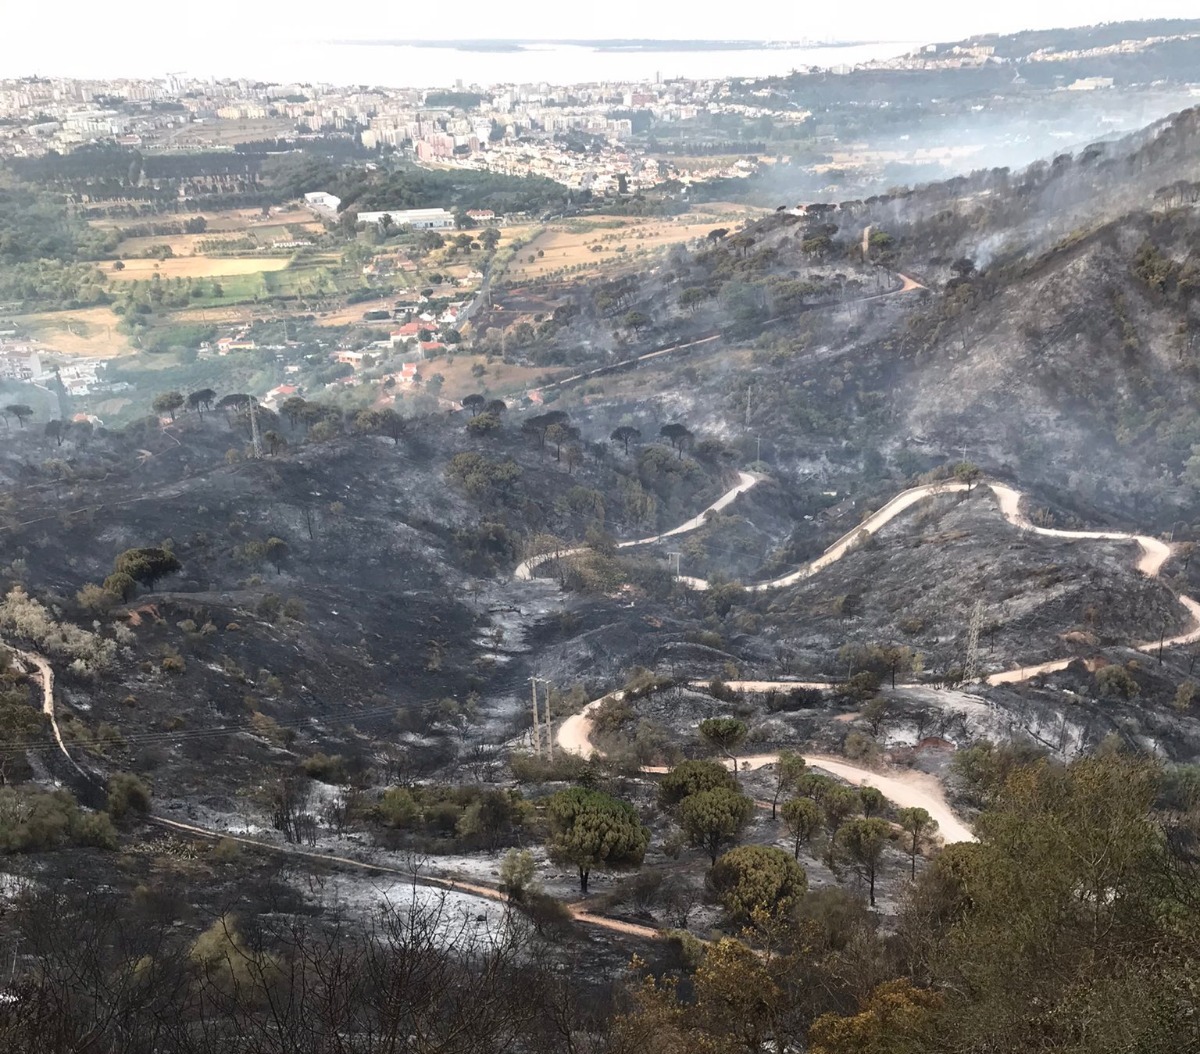 Balanço provisório aponta para cerca de 430 hectares de área ardida e 12 feridos no incêndio em Palmela